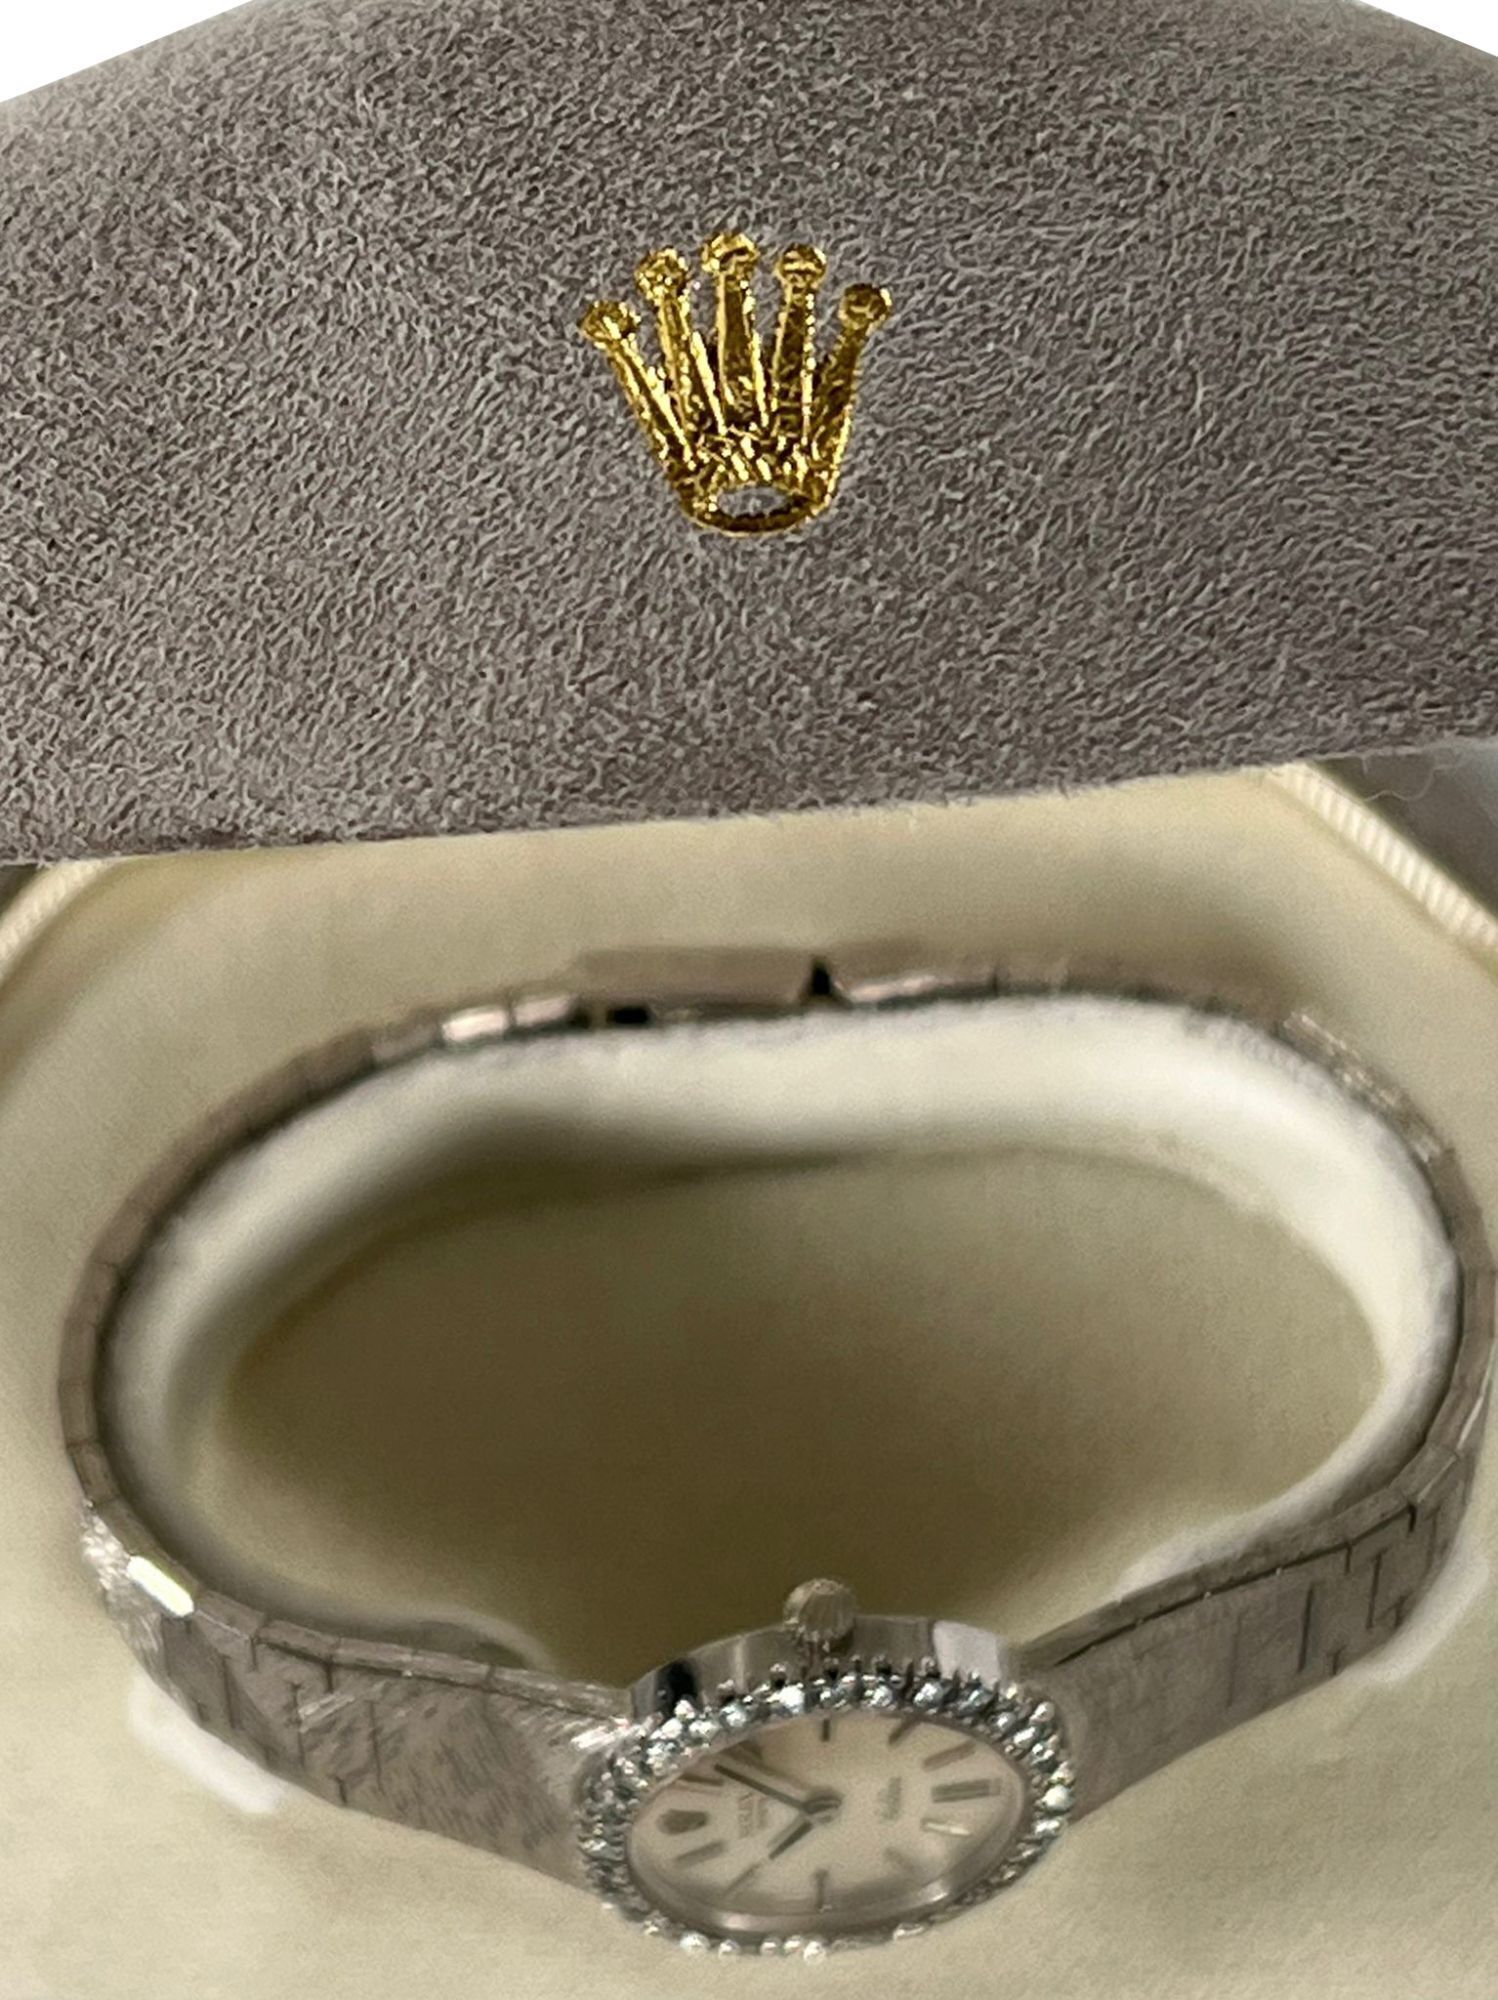 Rolex Cellini Ref. 639 18K White Gold Dress Watch with Diamond Bezel - 5